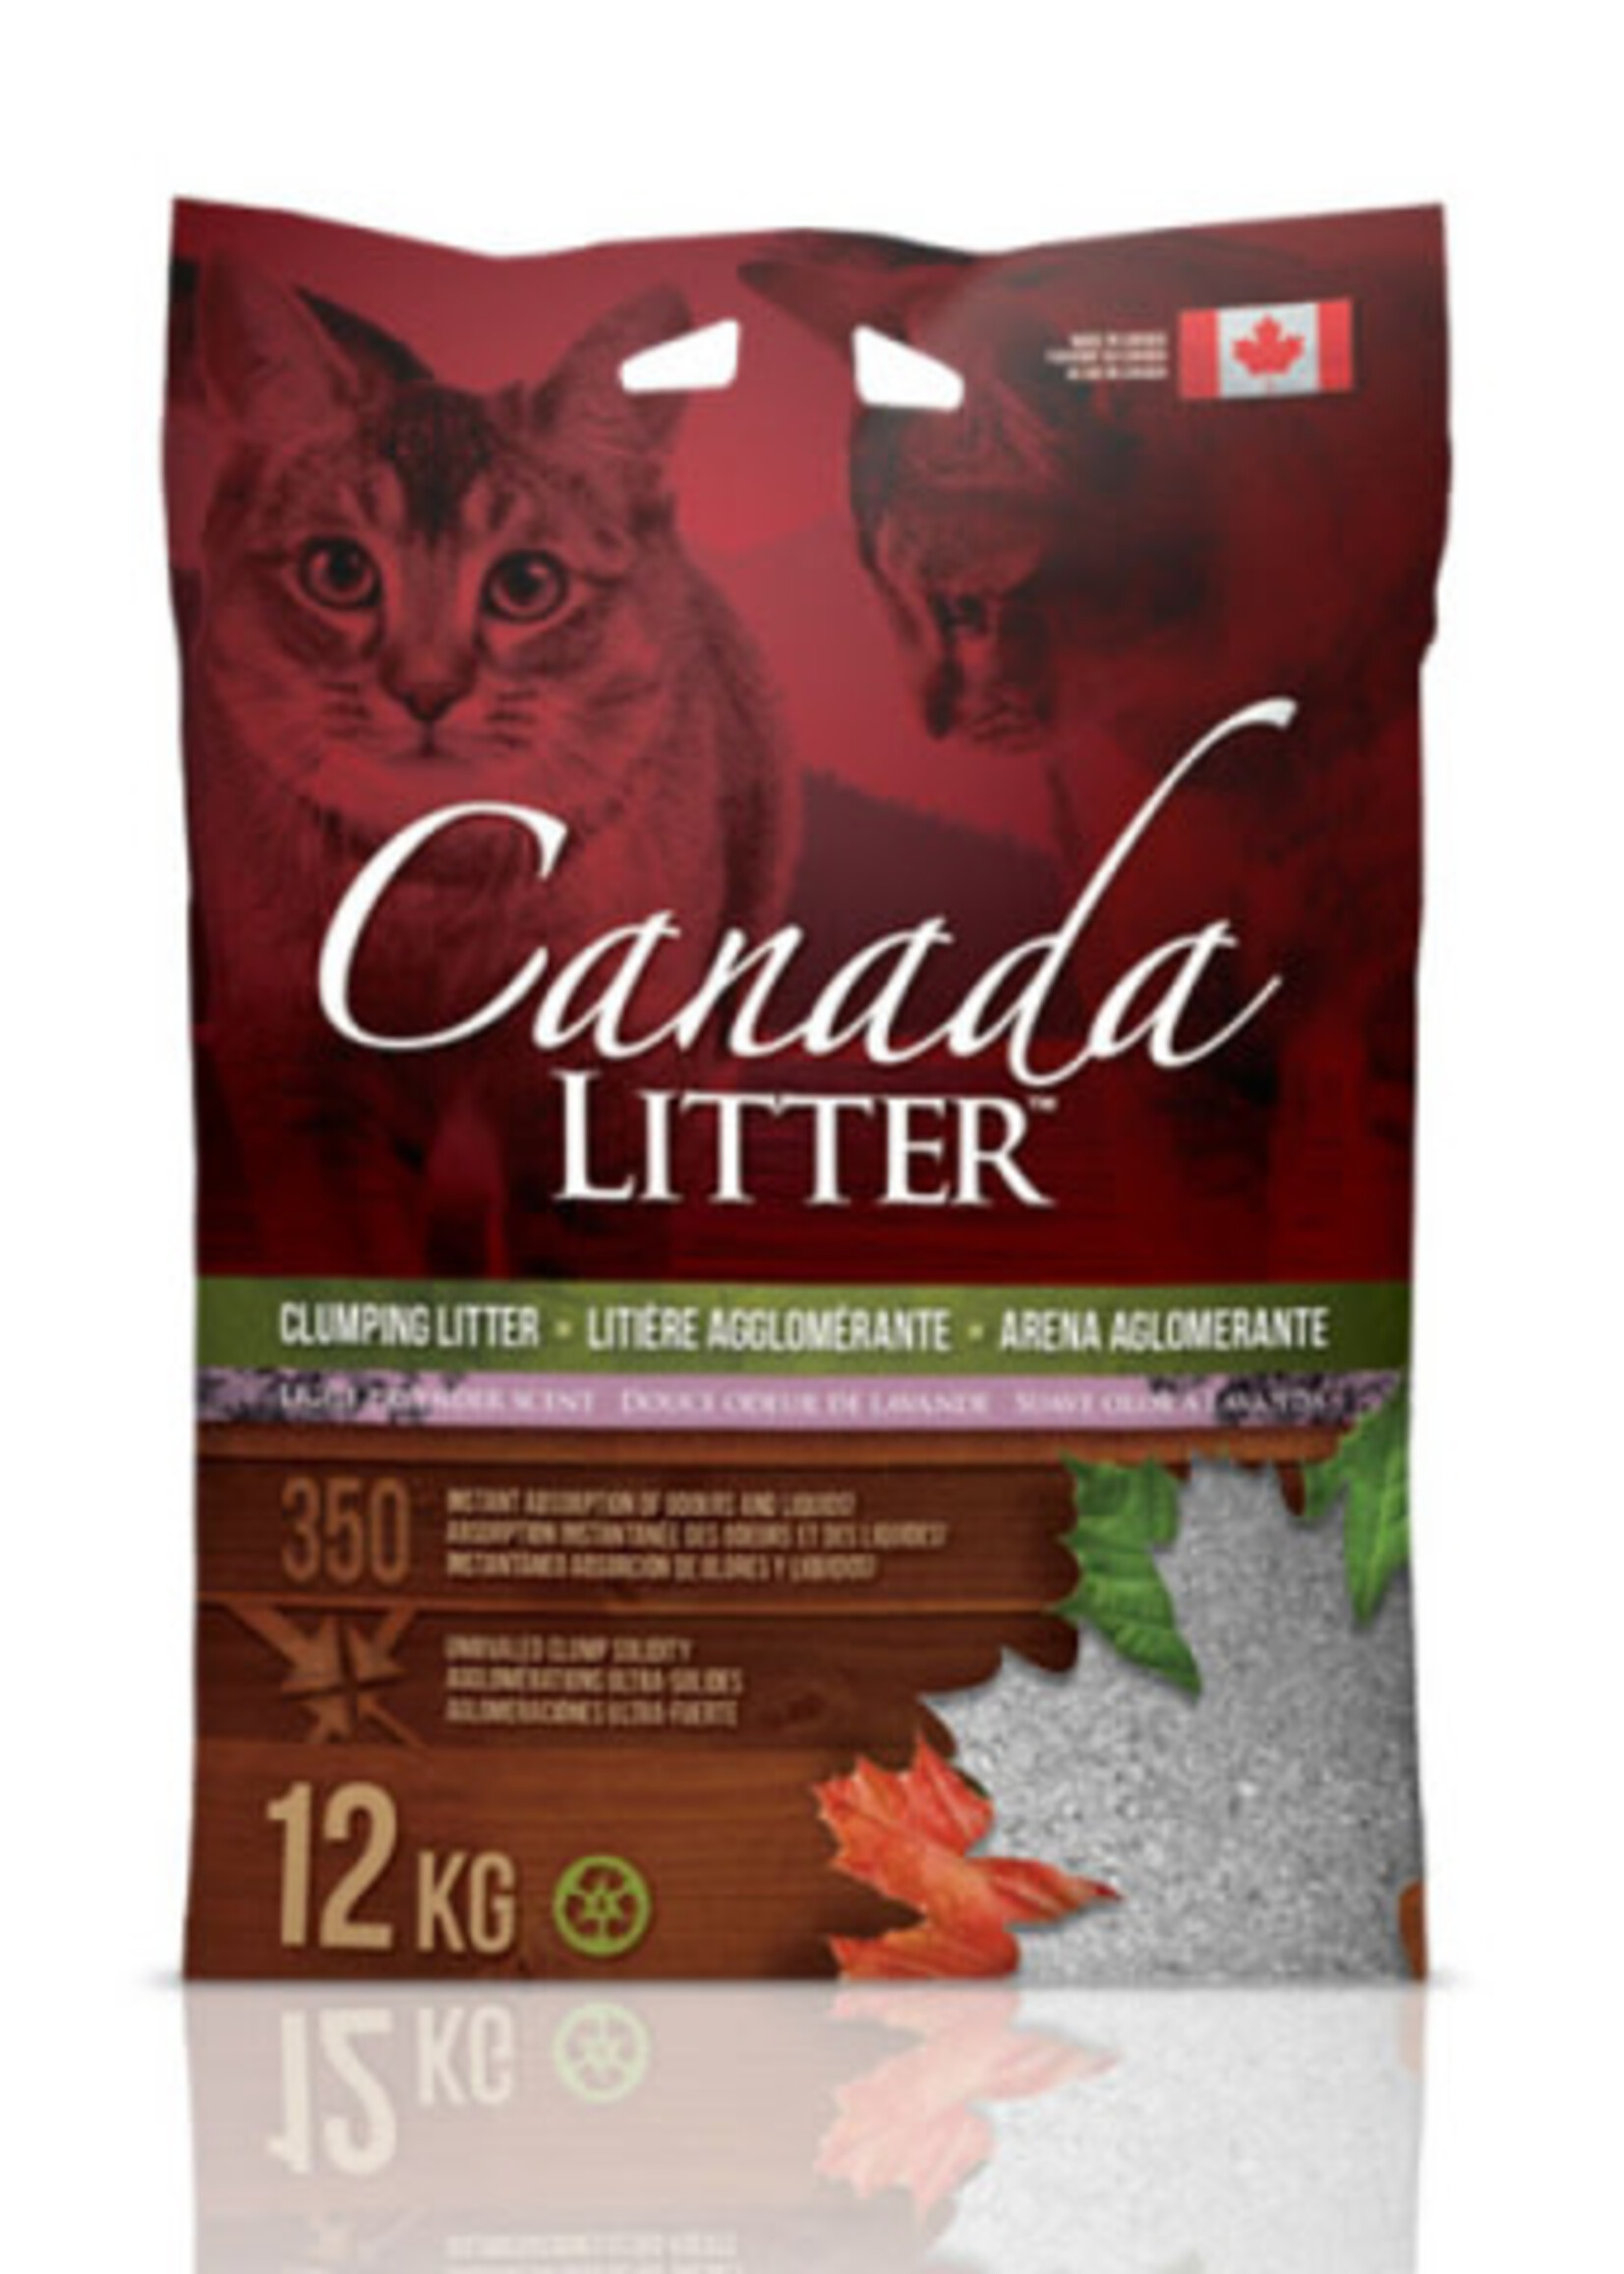 Canada Litter Clumping Clay Litter 12kg